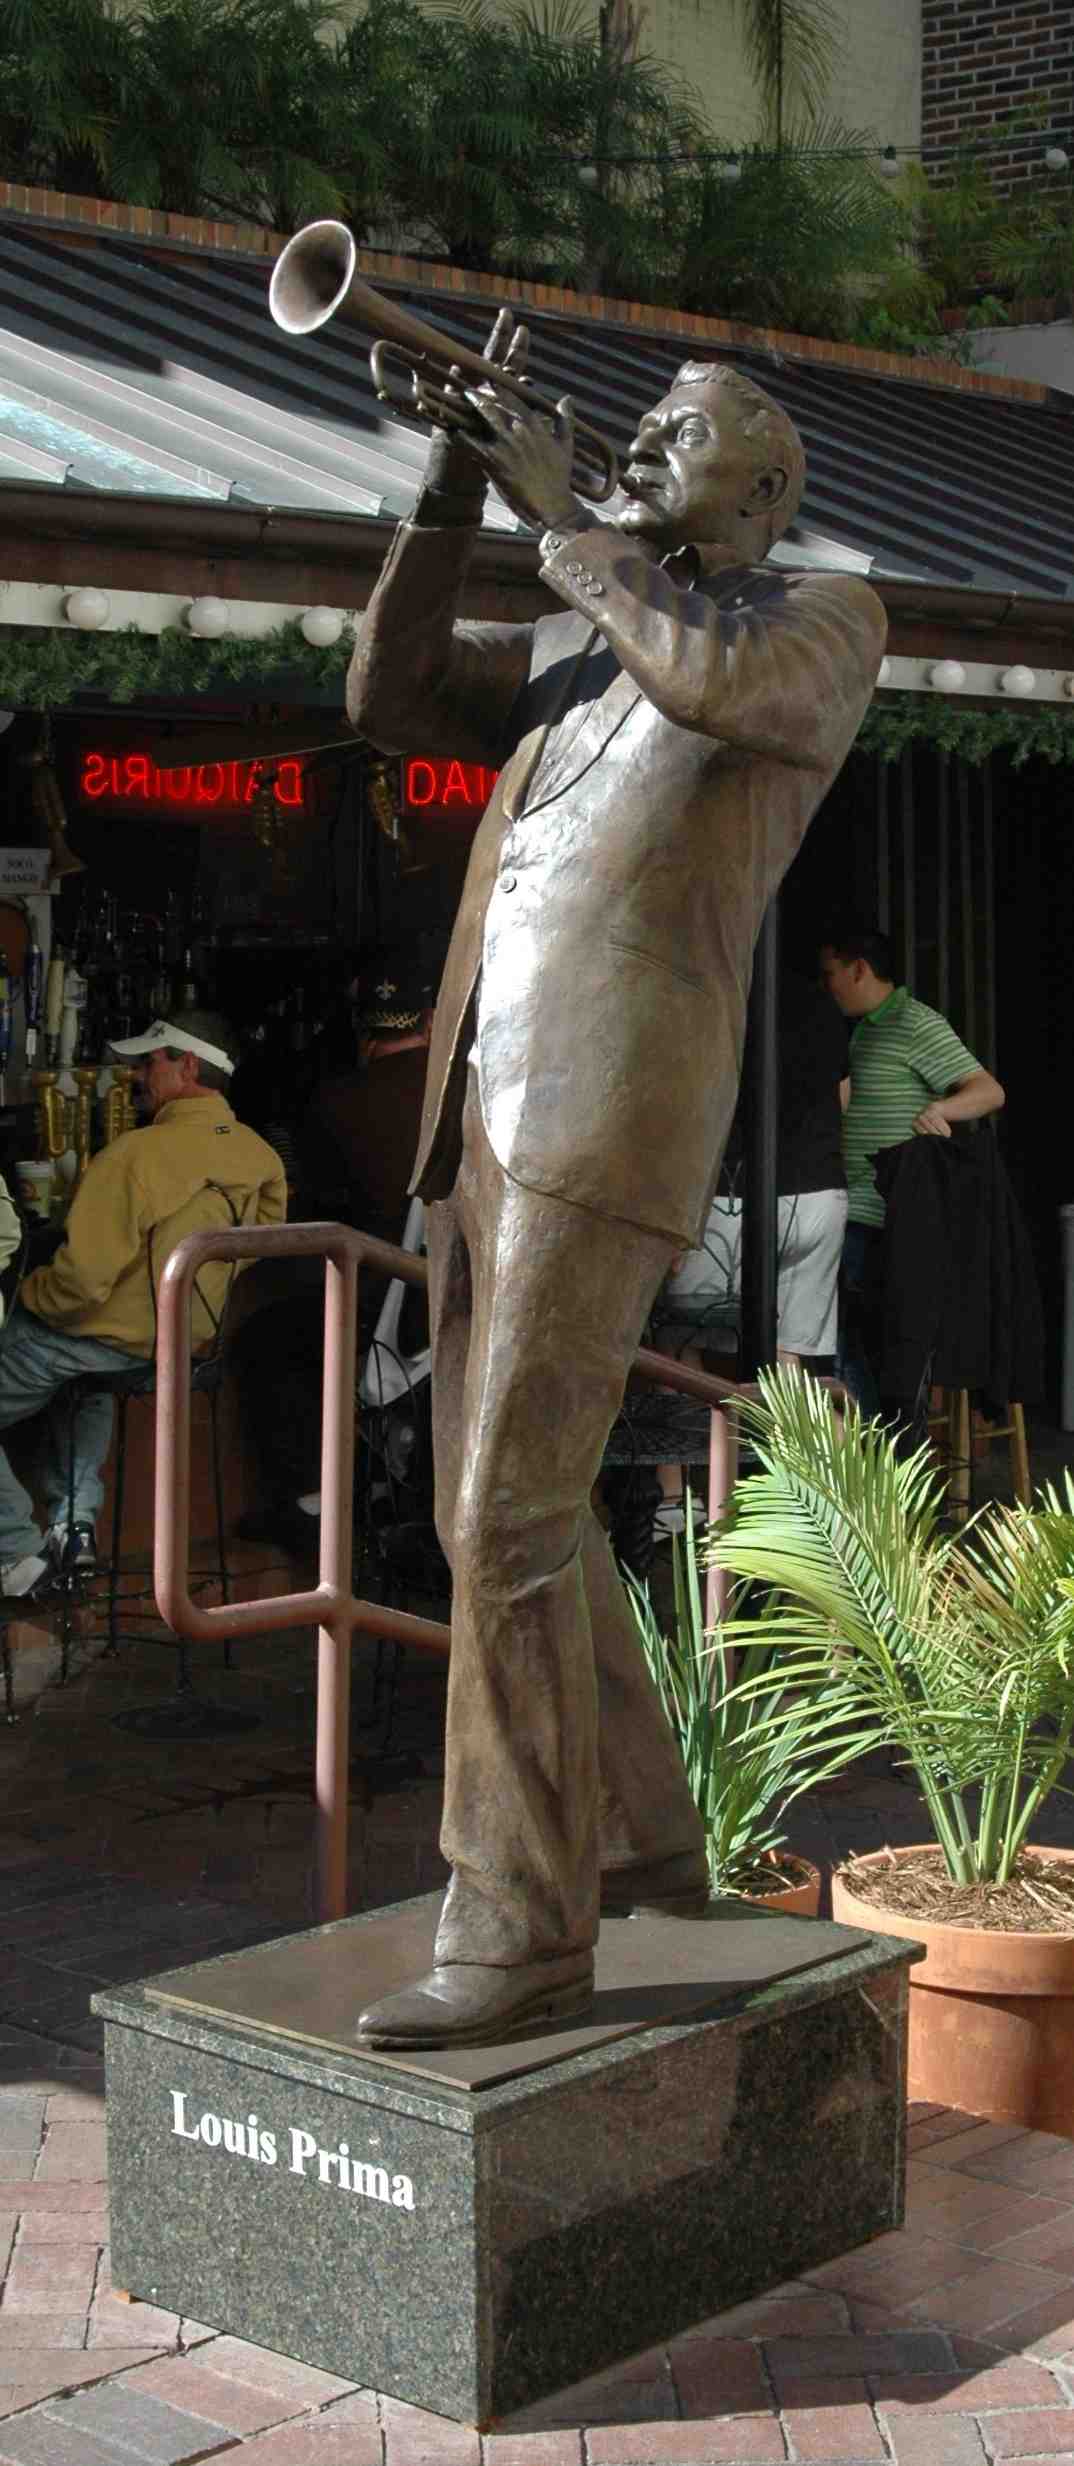 Louis-Prima statue